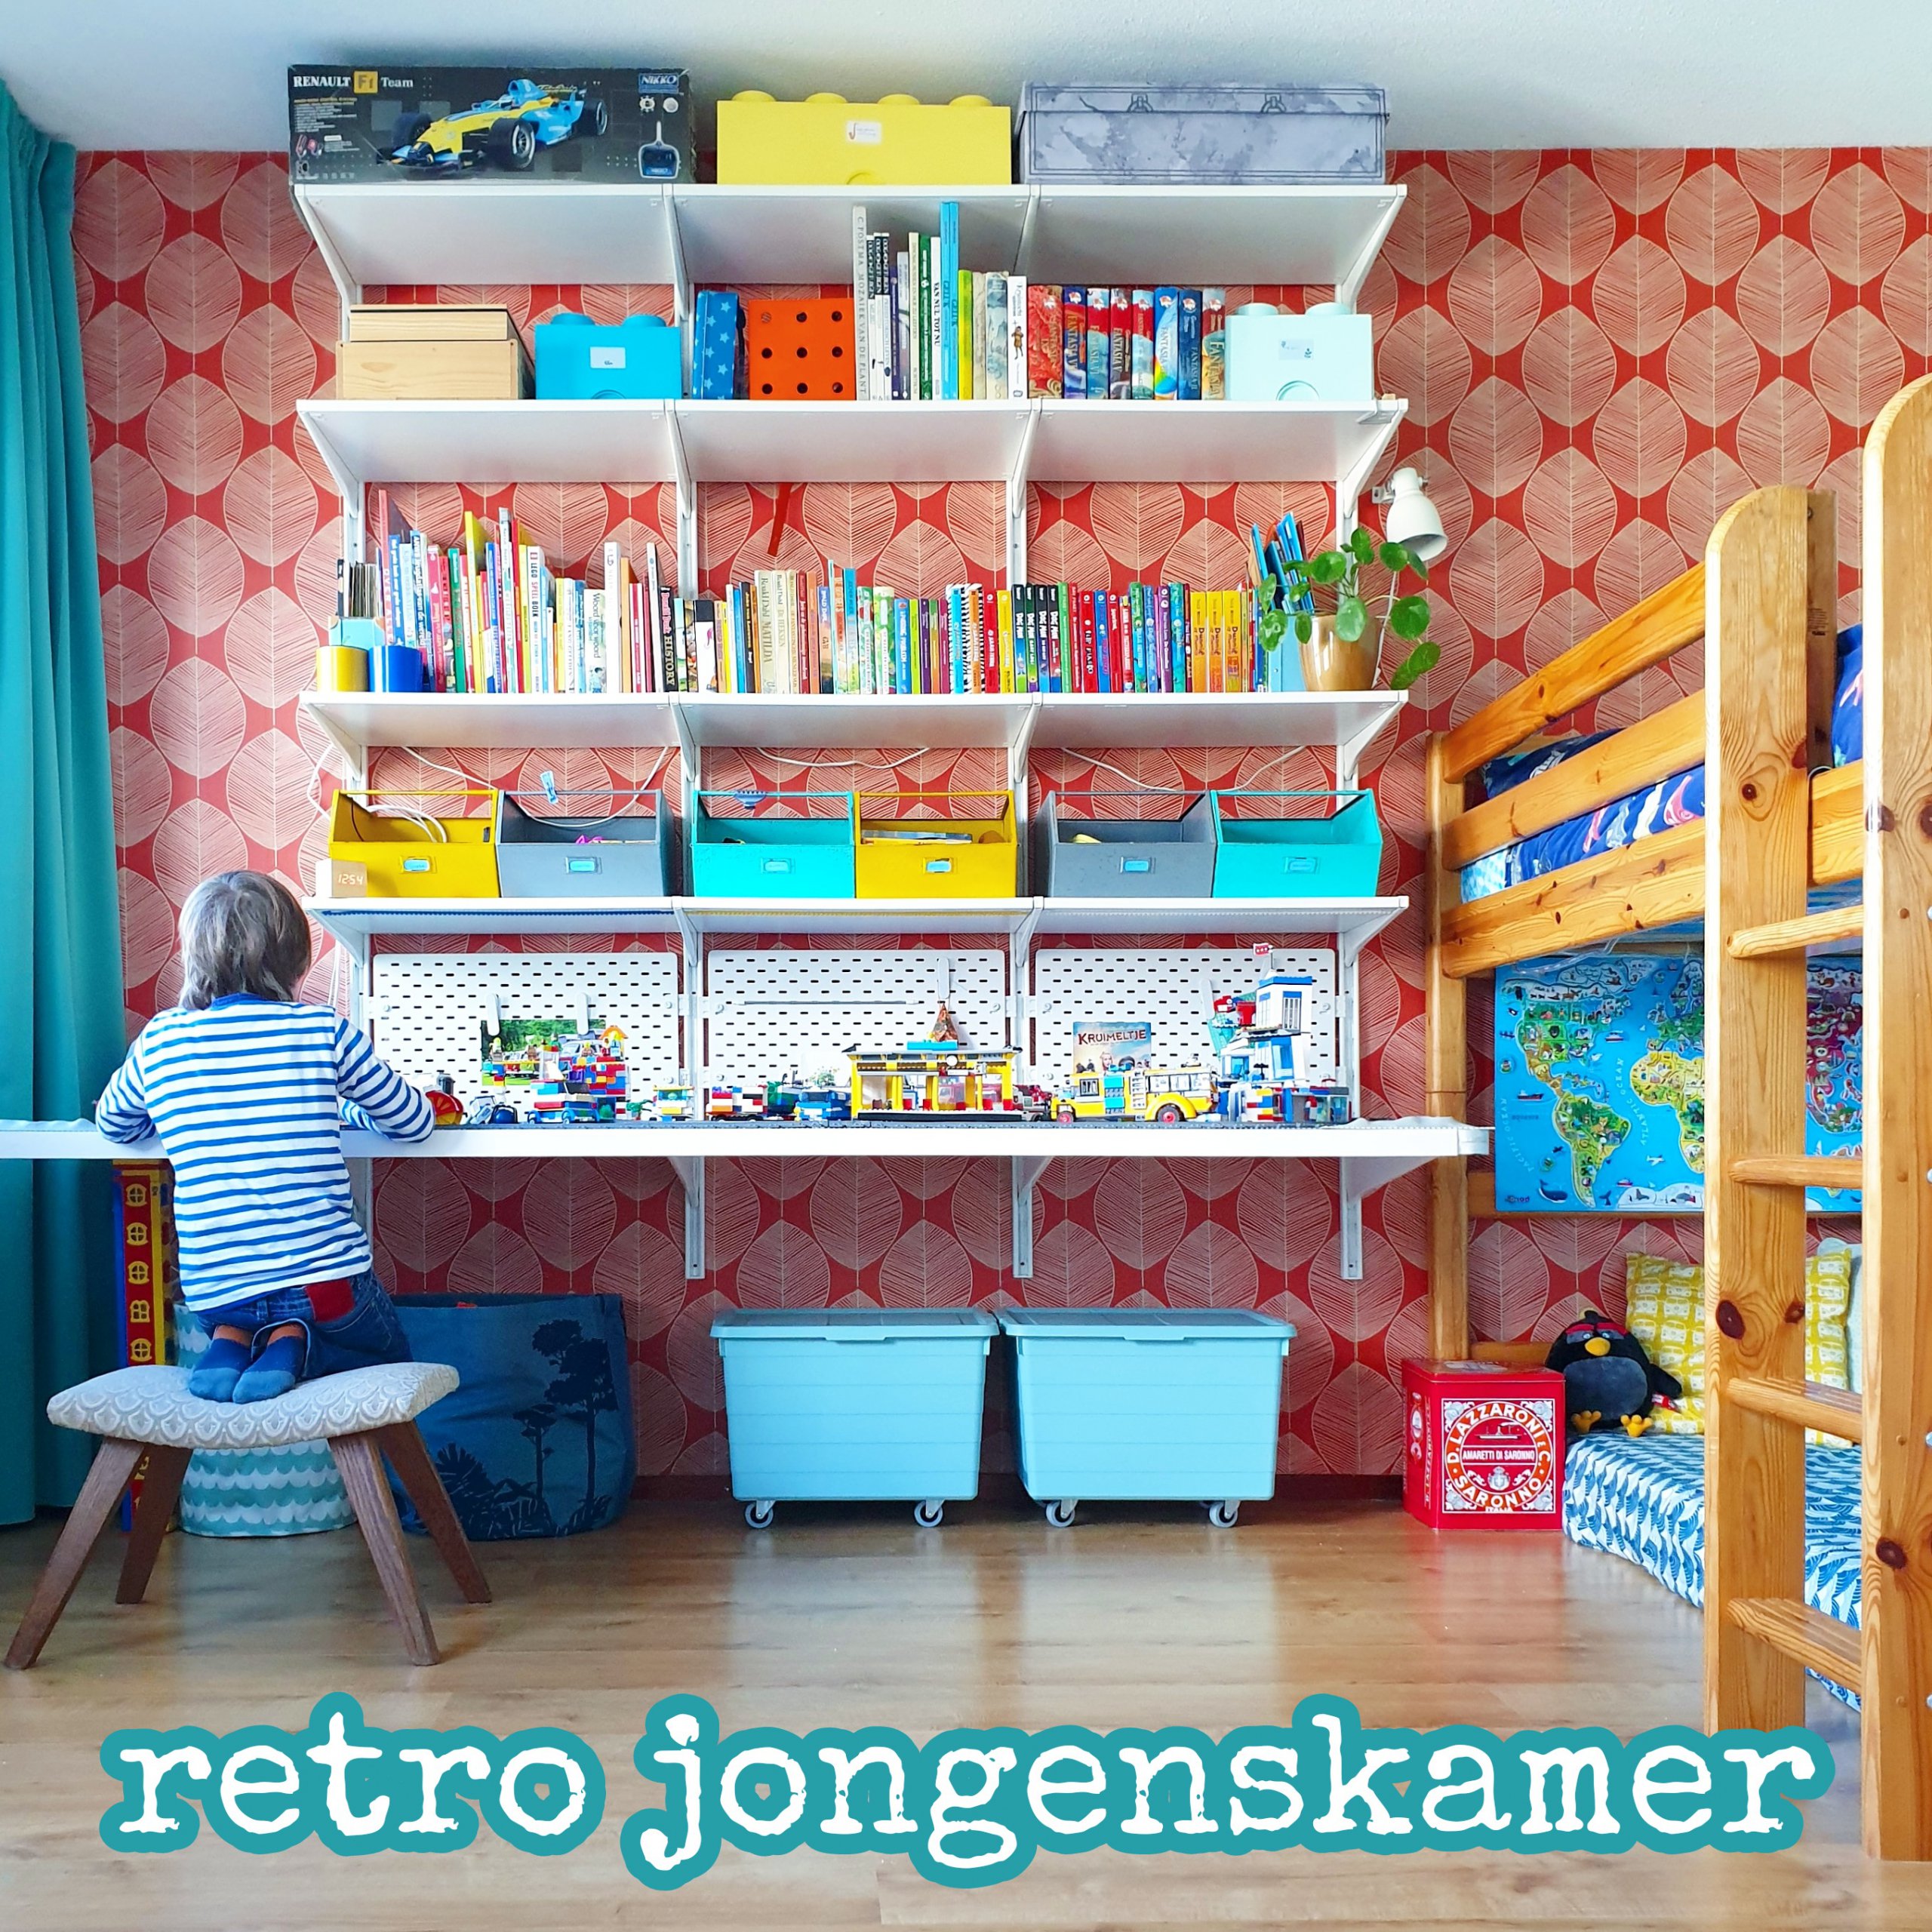 Kinderkamer inspiratie: retro jongenskamer met hout, rood en geel Leuk met kids